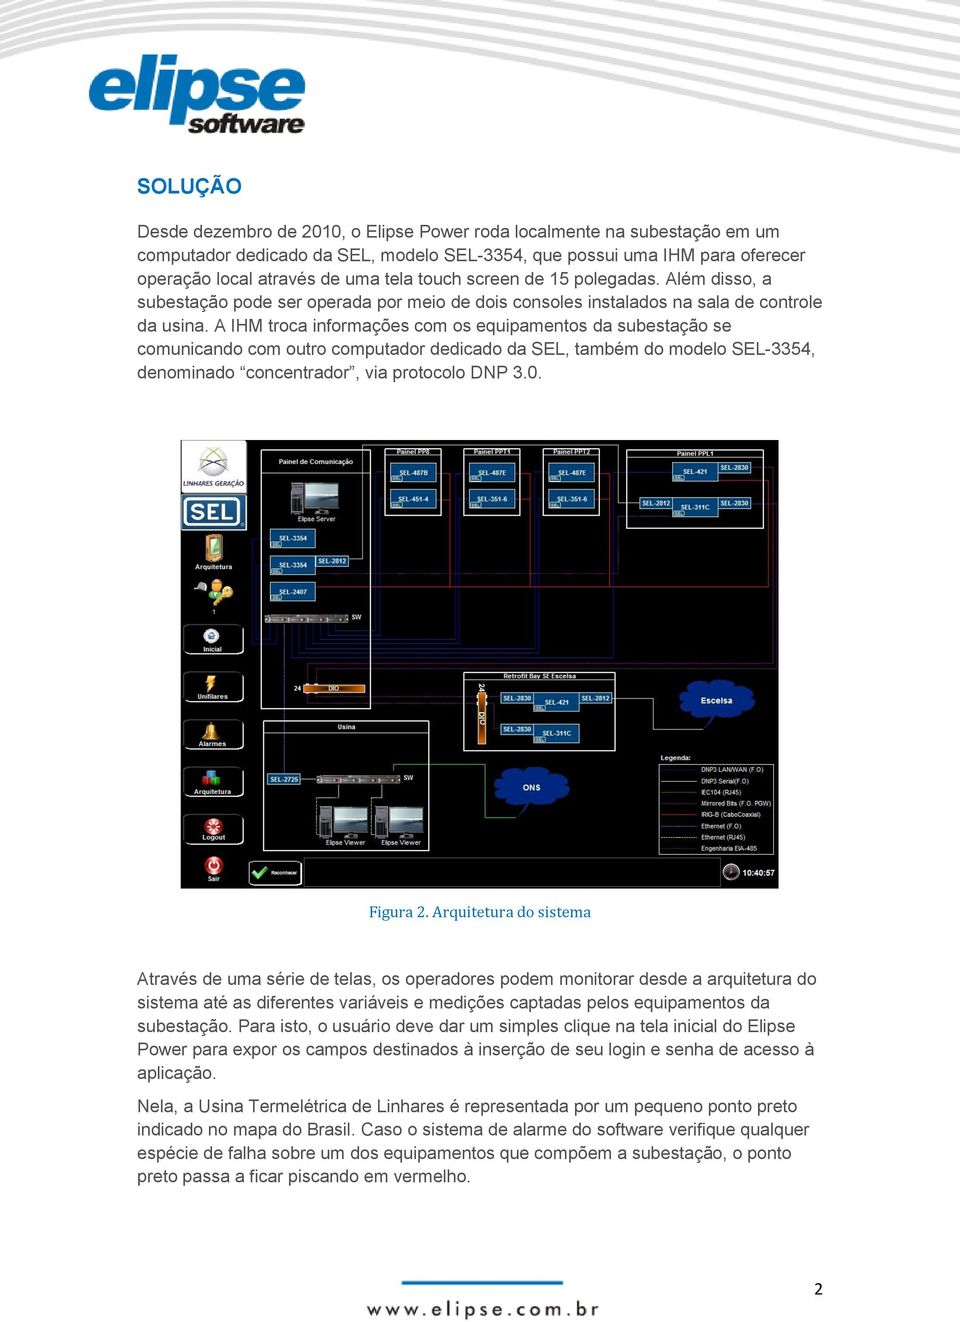 A IHM troca informações com os equipamentos da subestação se comunicando com outro computador dedicado da SEL, também do modelo SEL-3354, denominado concentrador, via protocolo DNP 3.0. Figura 2.